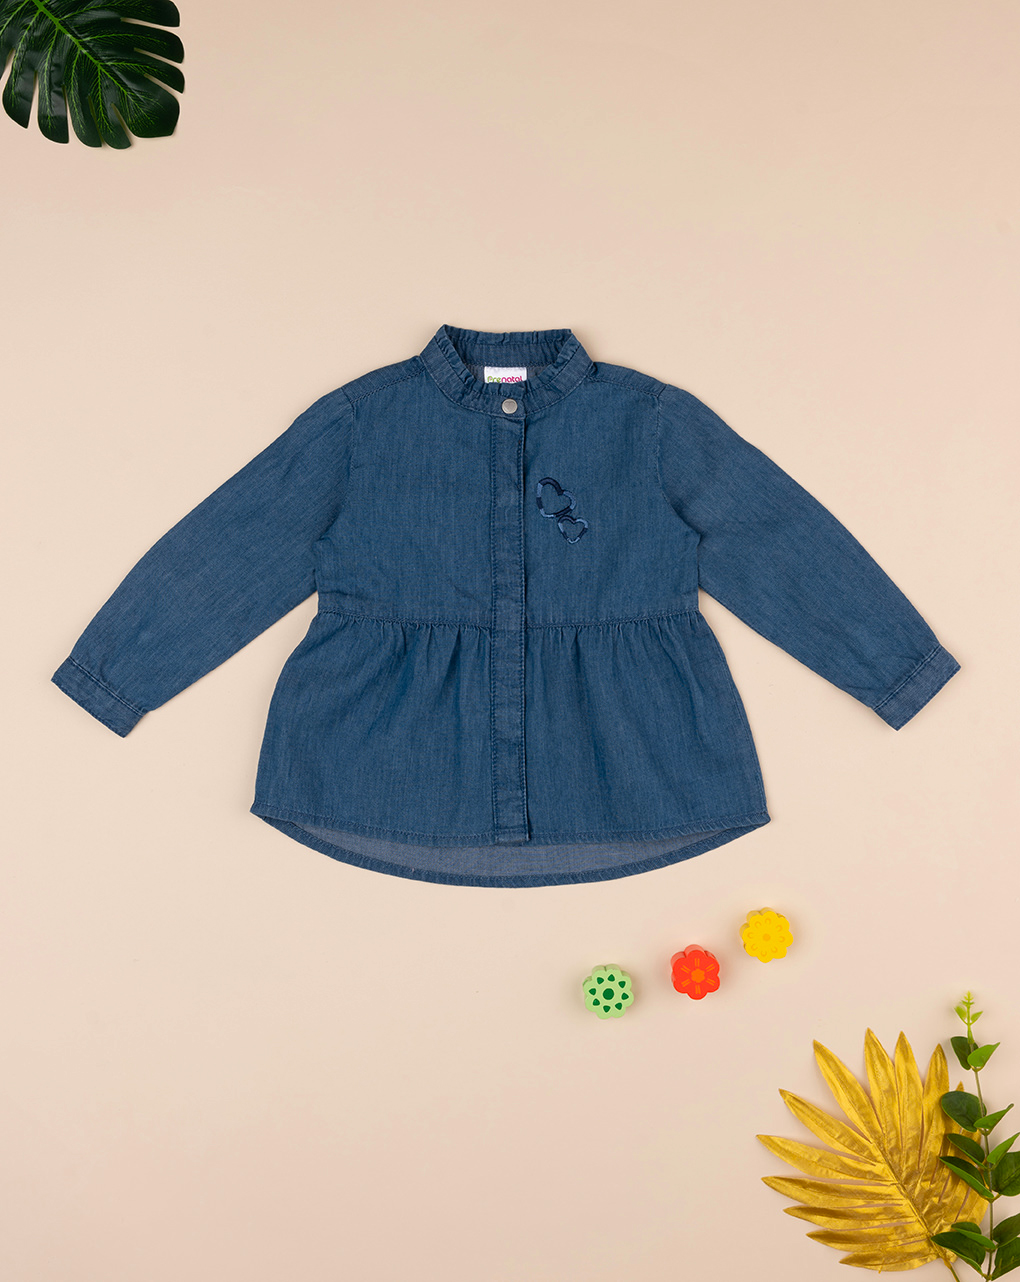 βρεφικό τζιν πουκάμισο μπλε με καρδούλες για κορίτσι